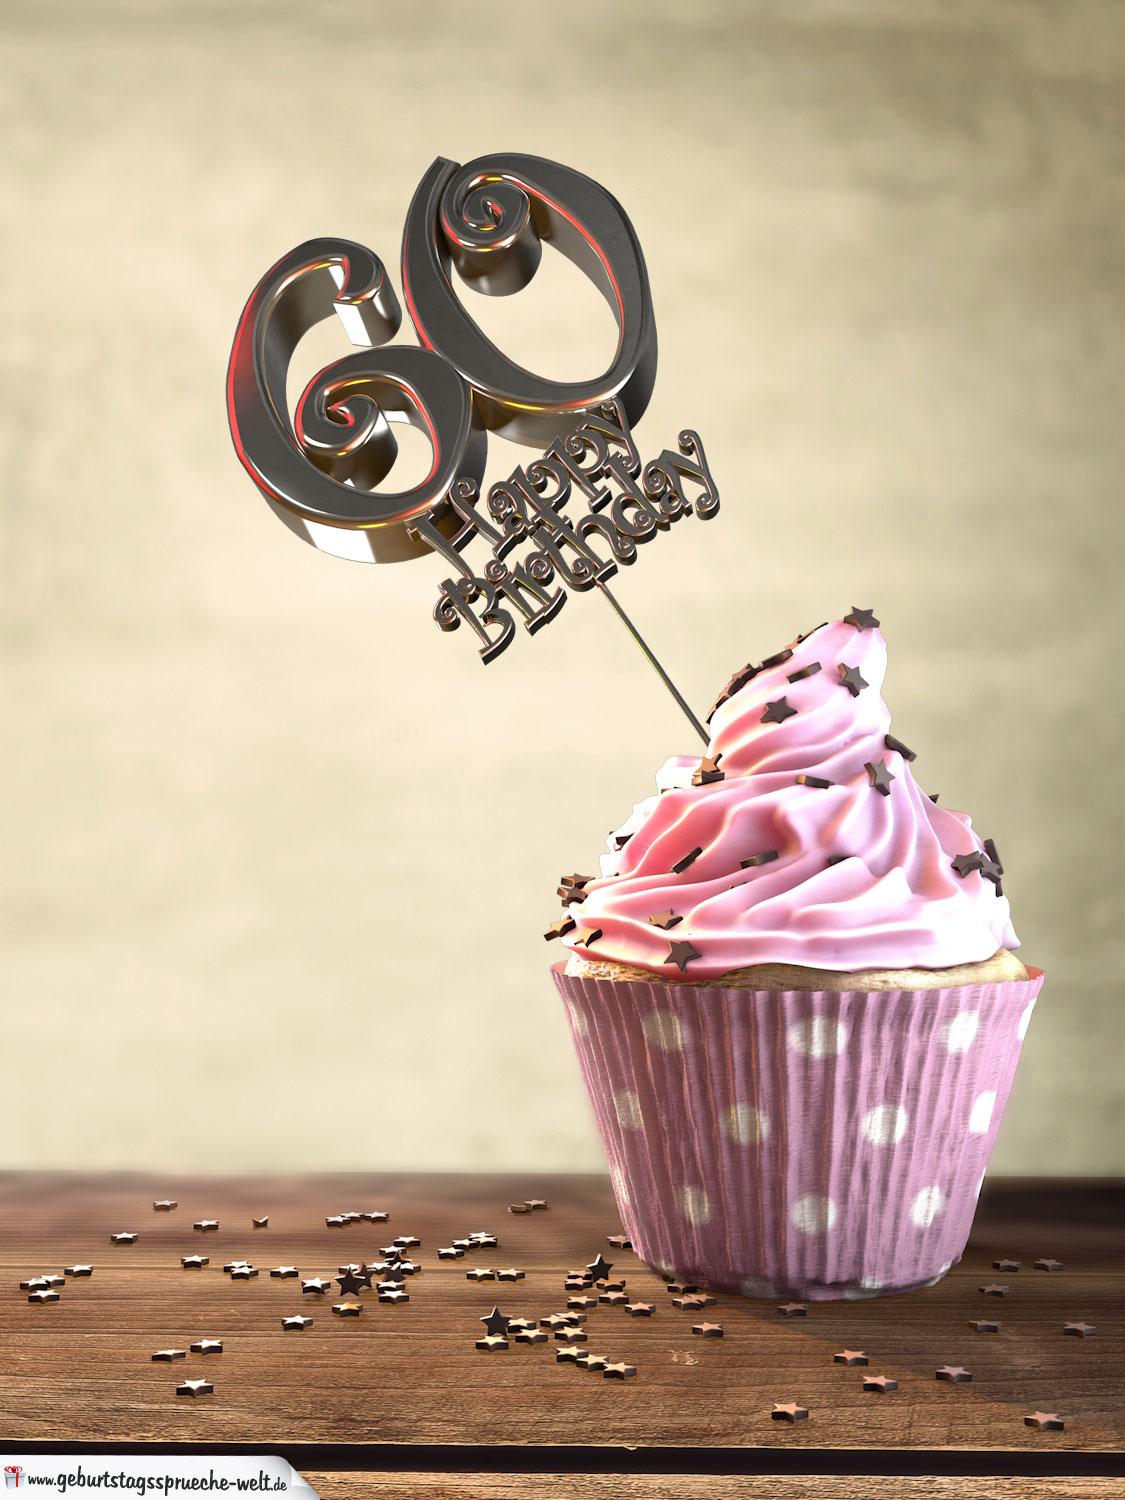 60 Geburtstag Muffin Geburtstagskuchen Happy Birthday Geburtstagsspruche Welt